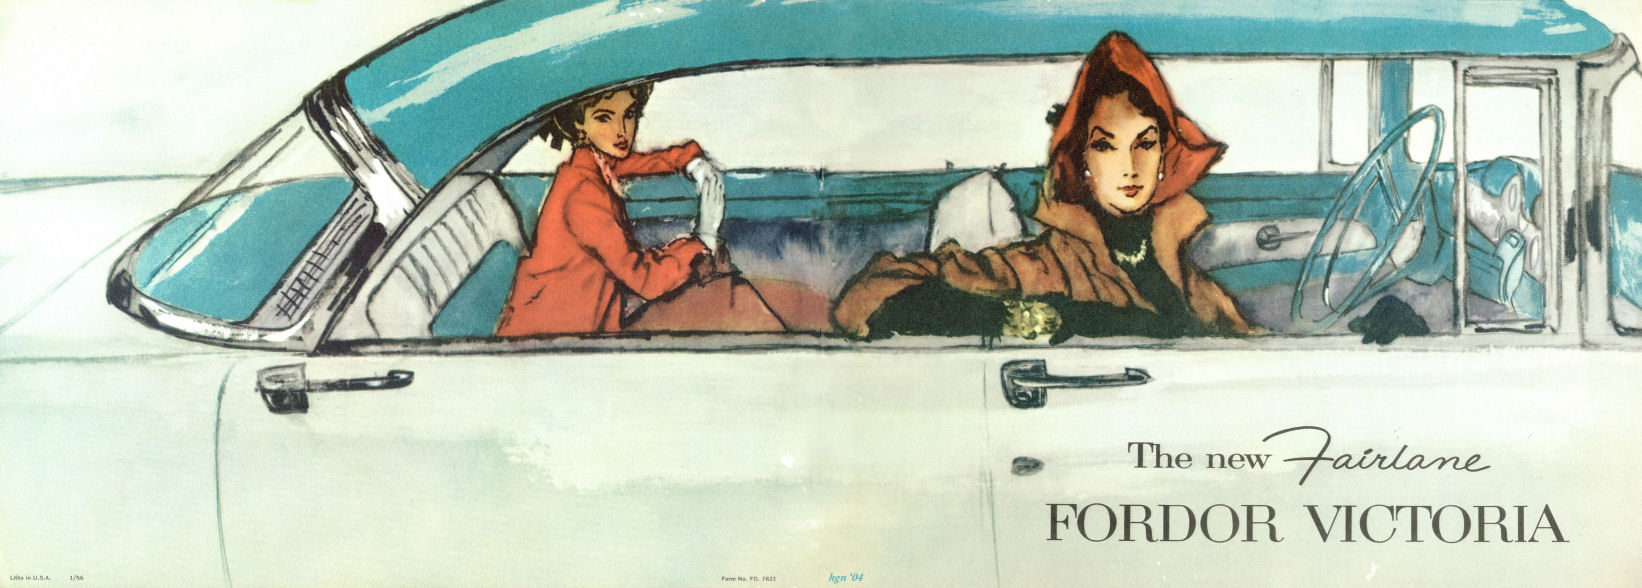 1956 Ford Fairlane Victoria Brochure Page 3